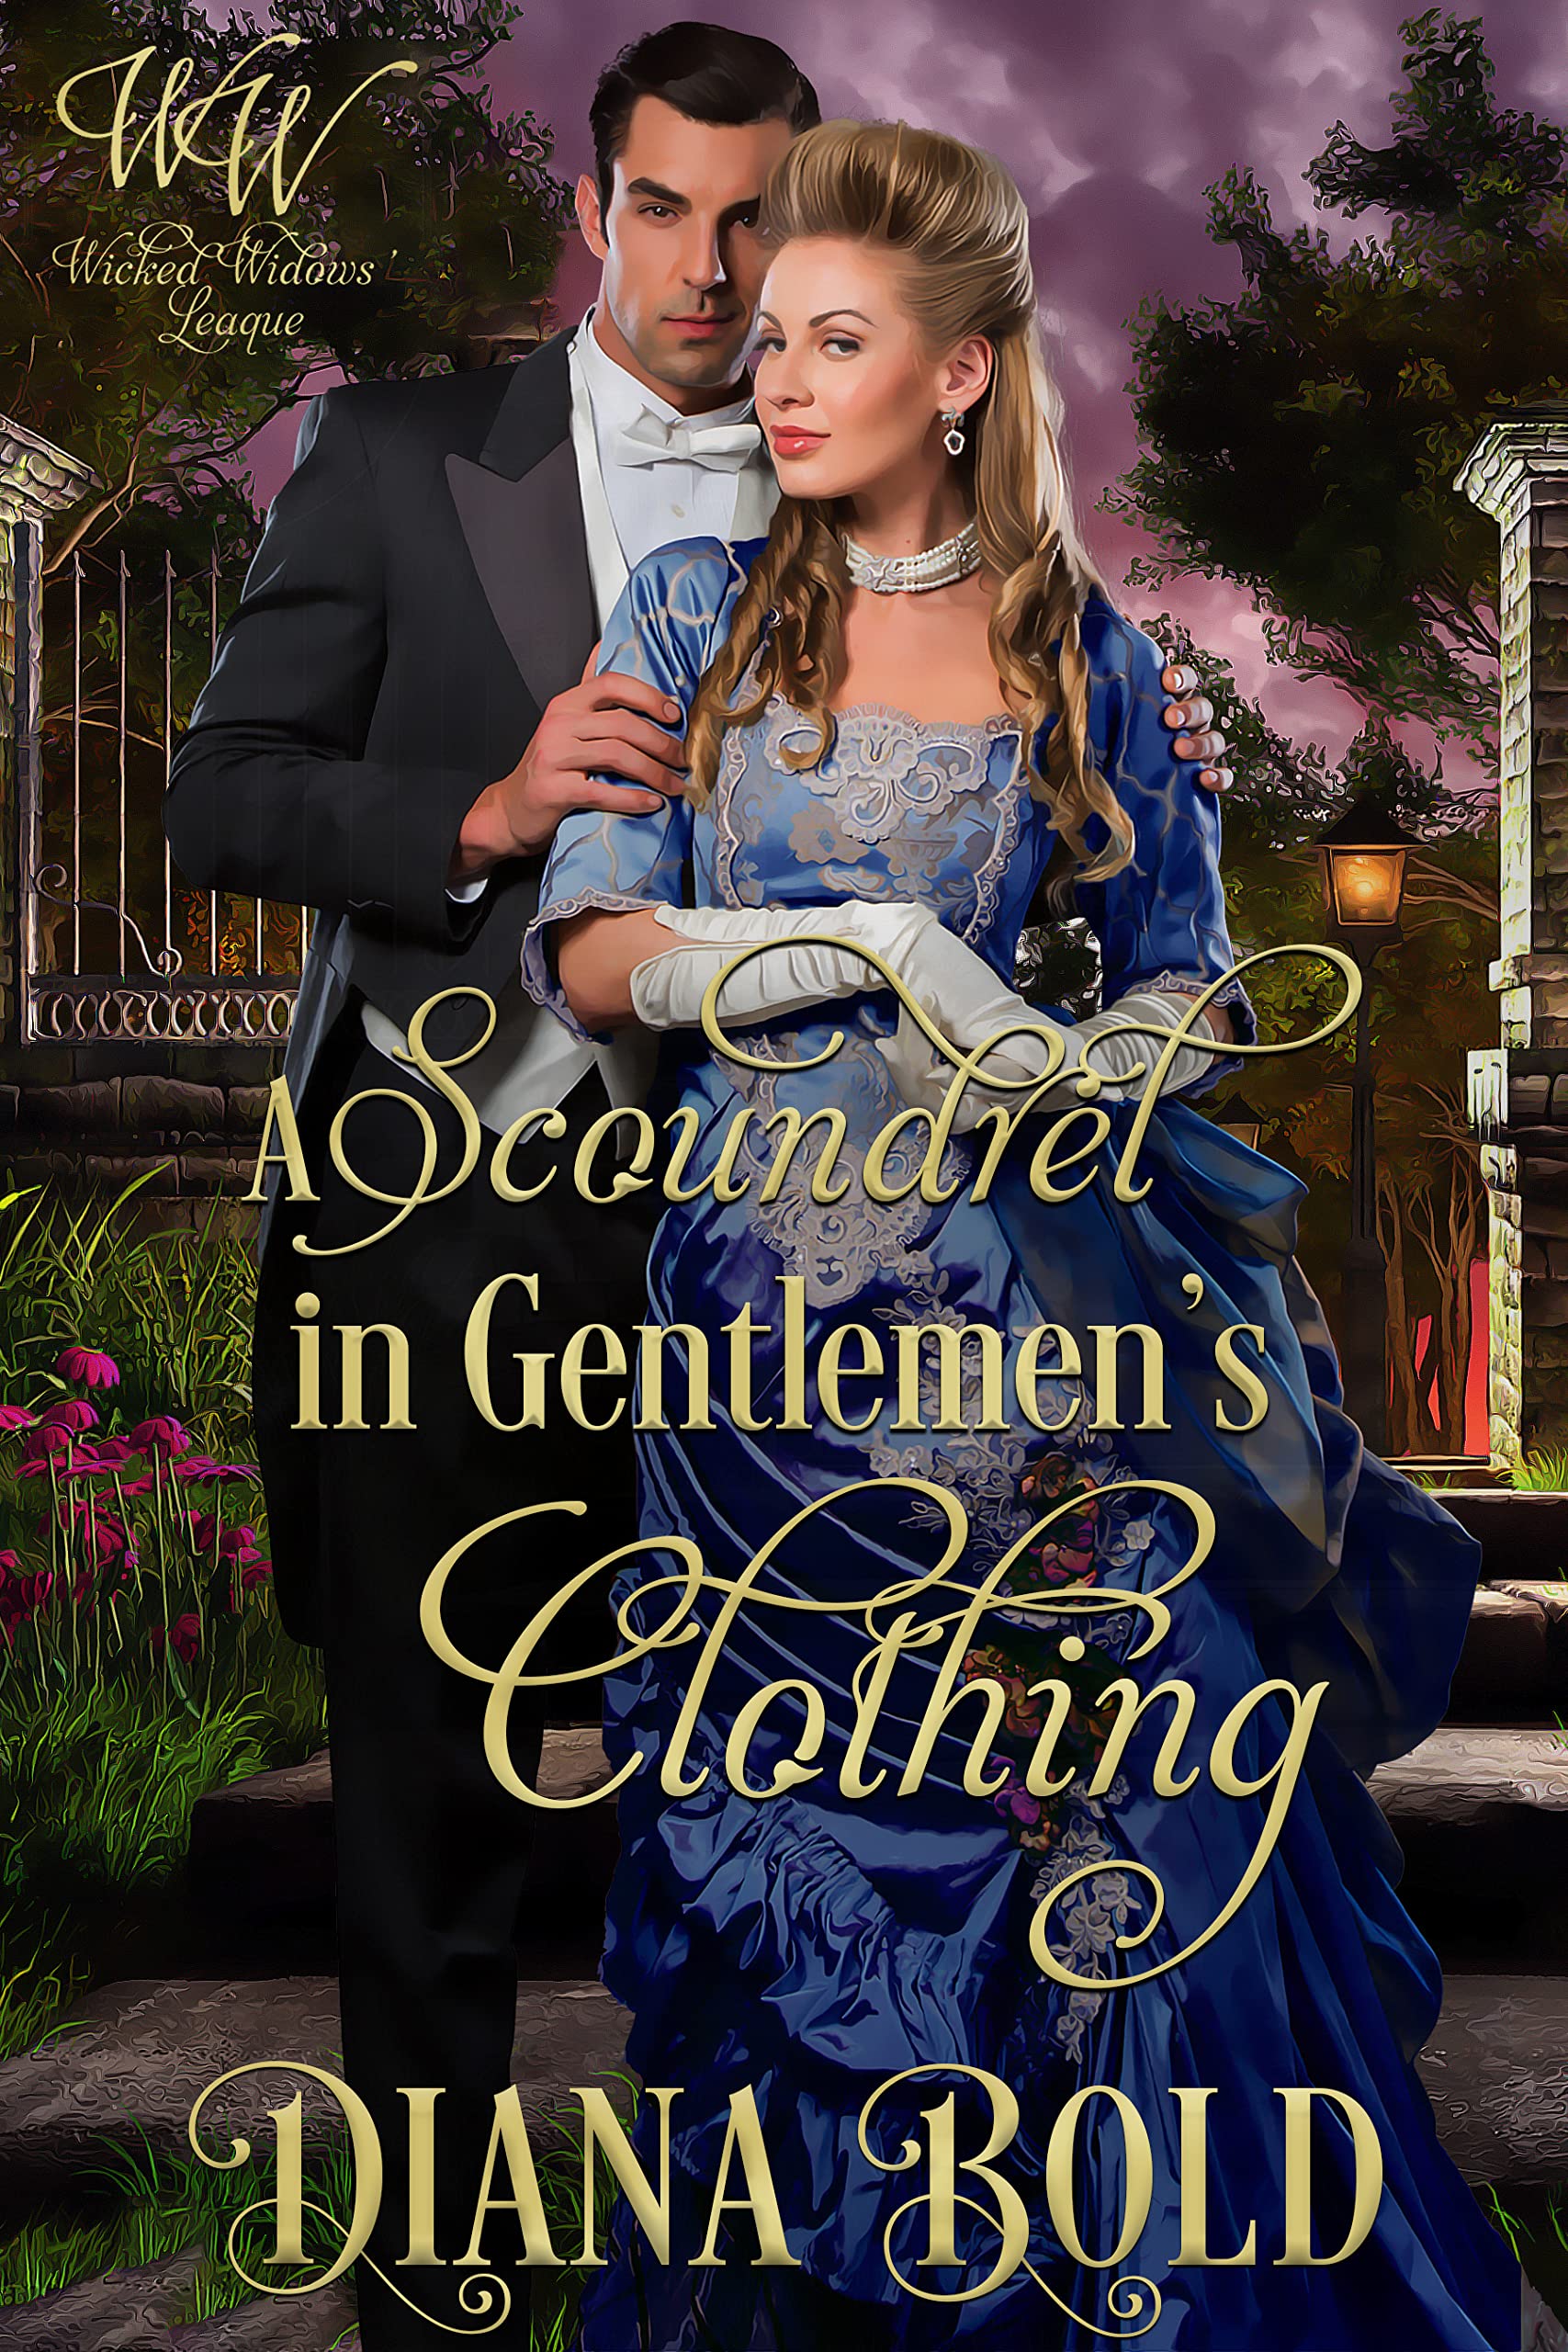 A Scoundrel in Gentlemen's Clothing